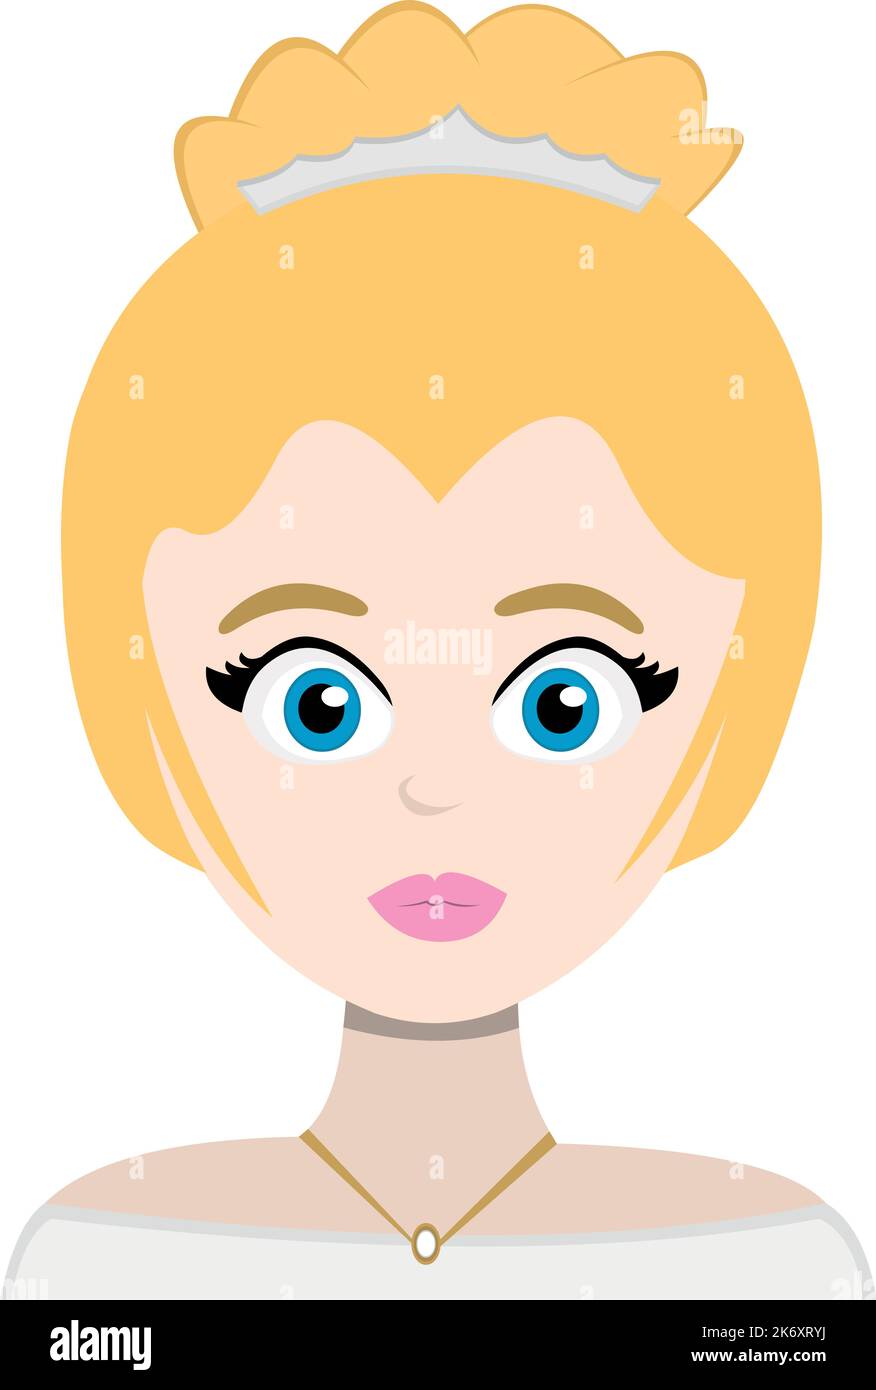 Illustration vectorielle d'une princesse/mariée de dessin animé, avec des cheveux blonds et des yeux bleus Illustration de Vecteur